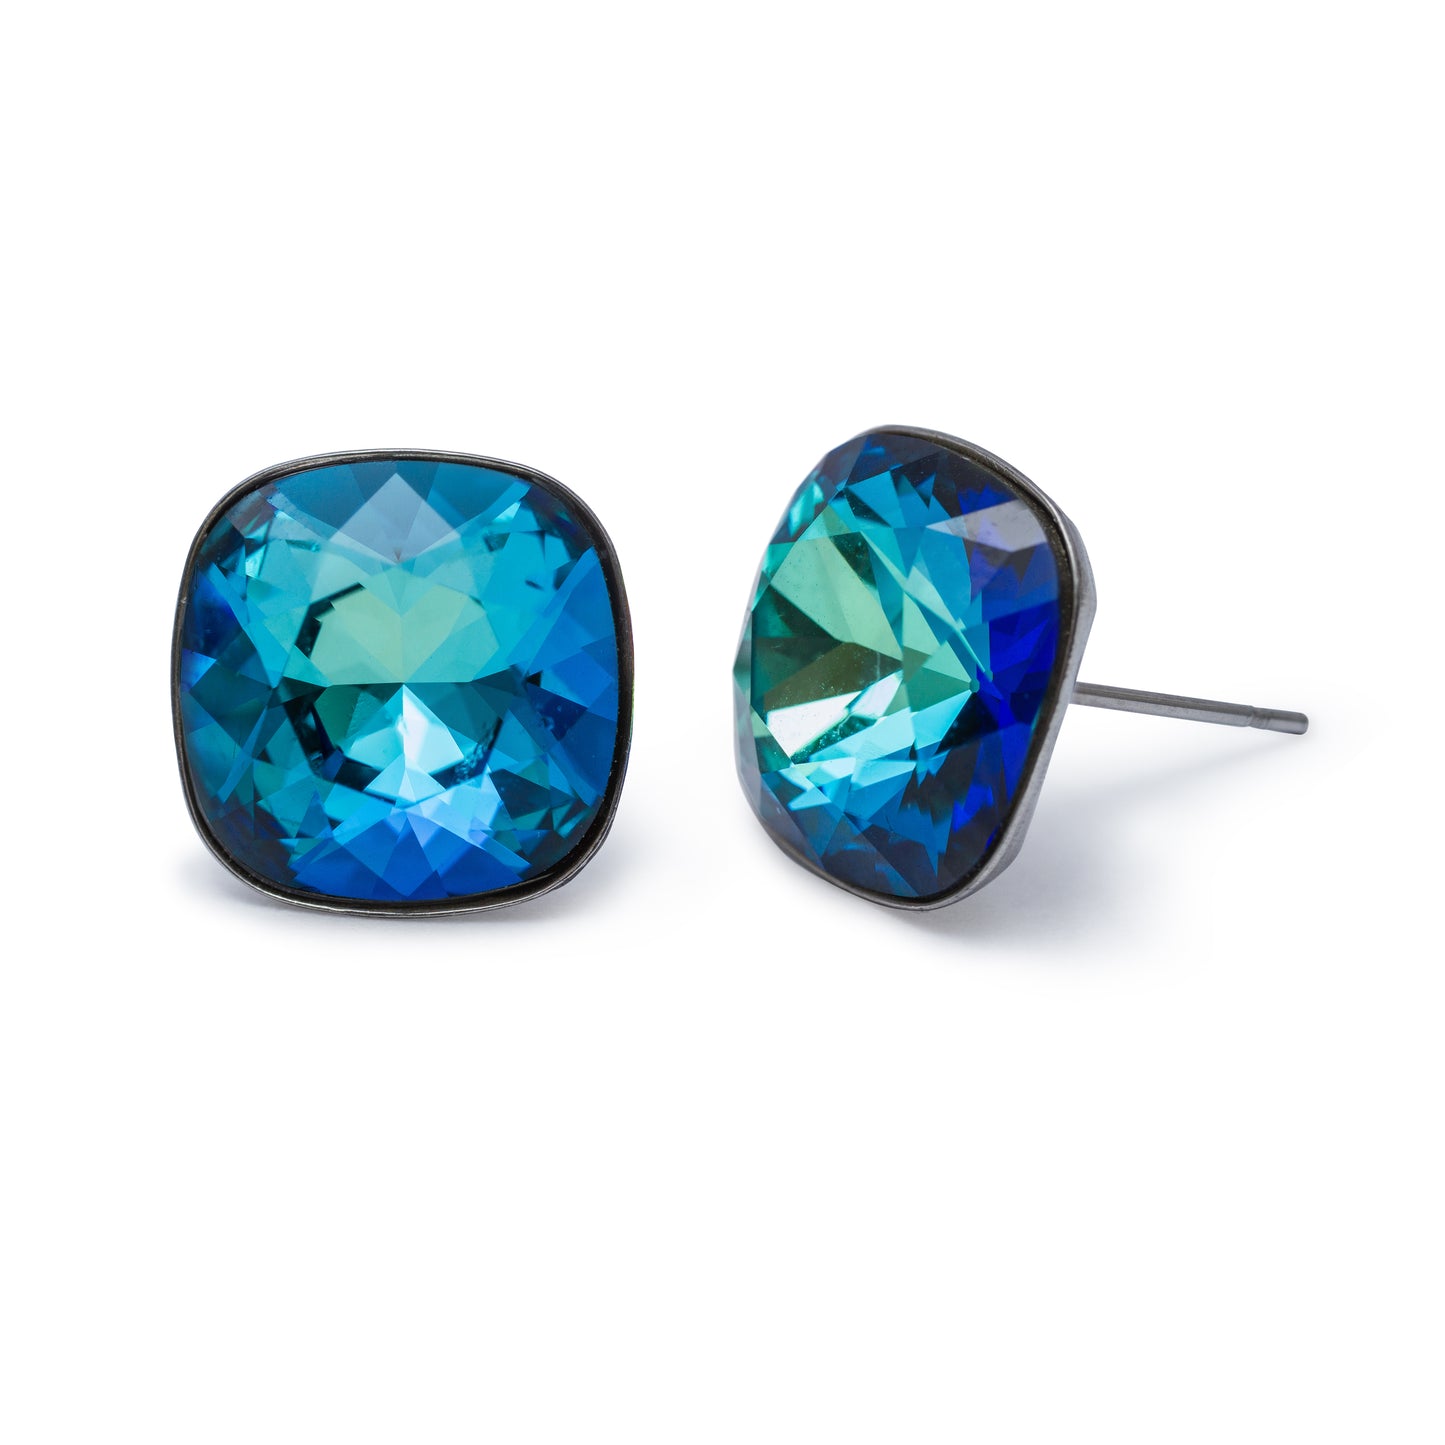 Bermuda Blue Silvertone Stud Earrings With Swarovski Crystals